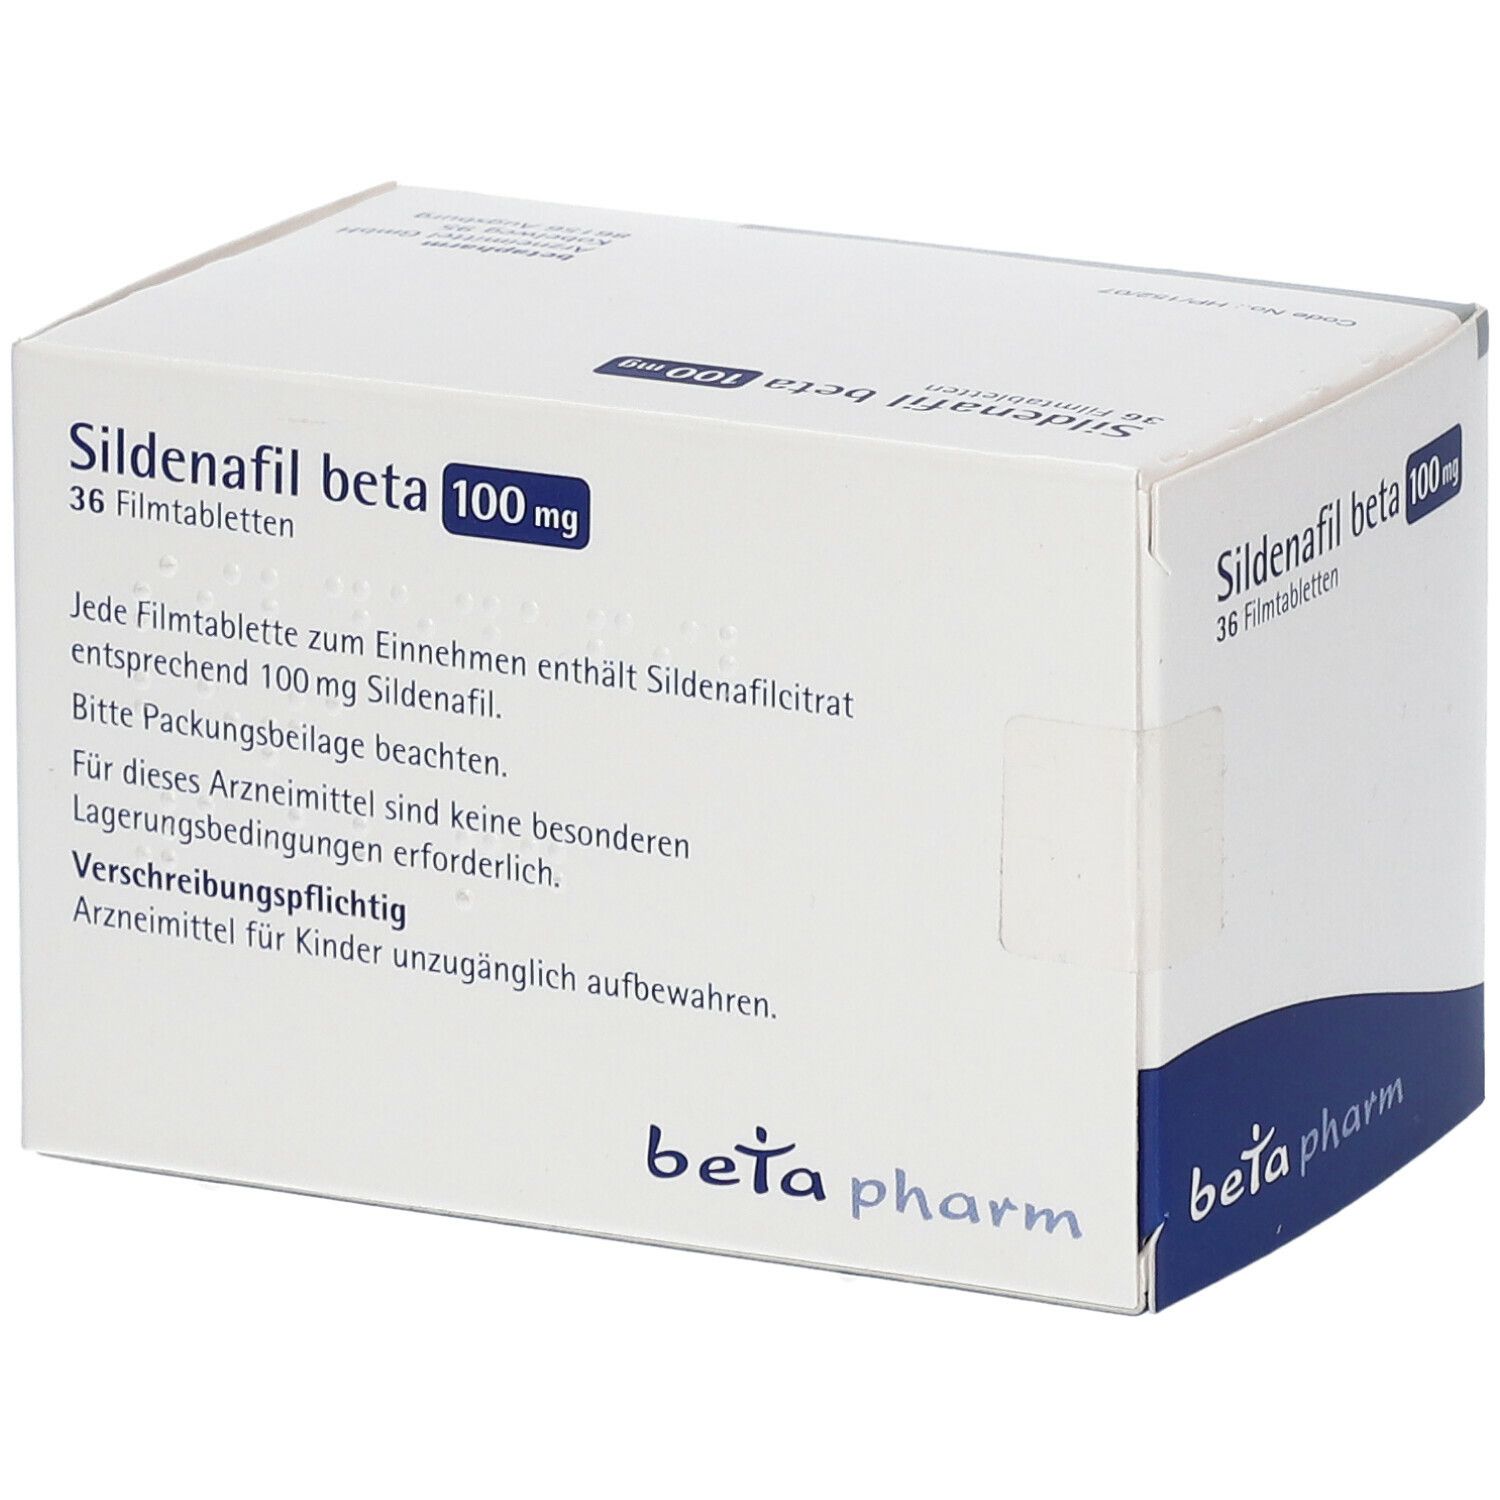 Sildenafil beta 100 mg